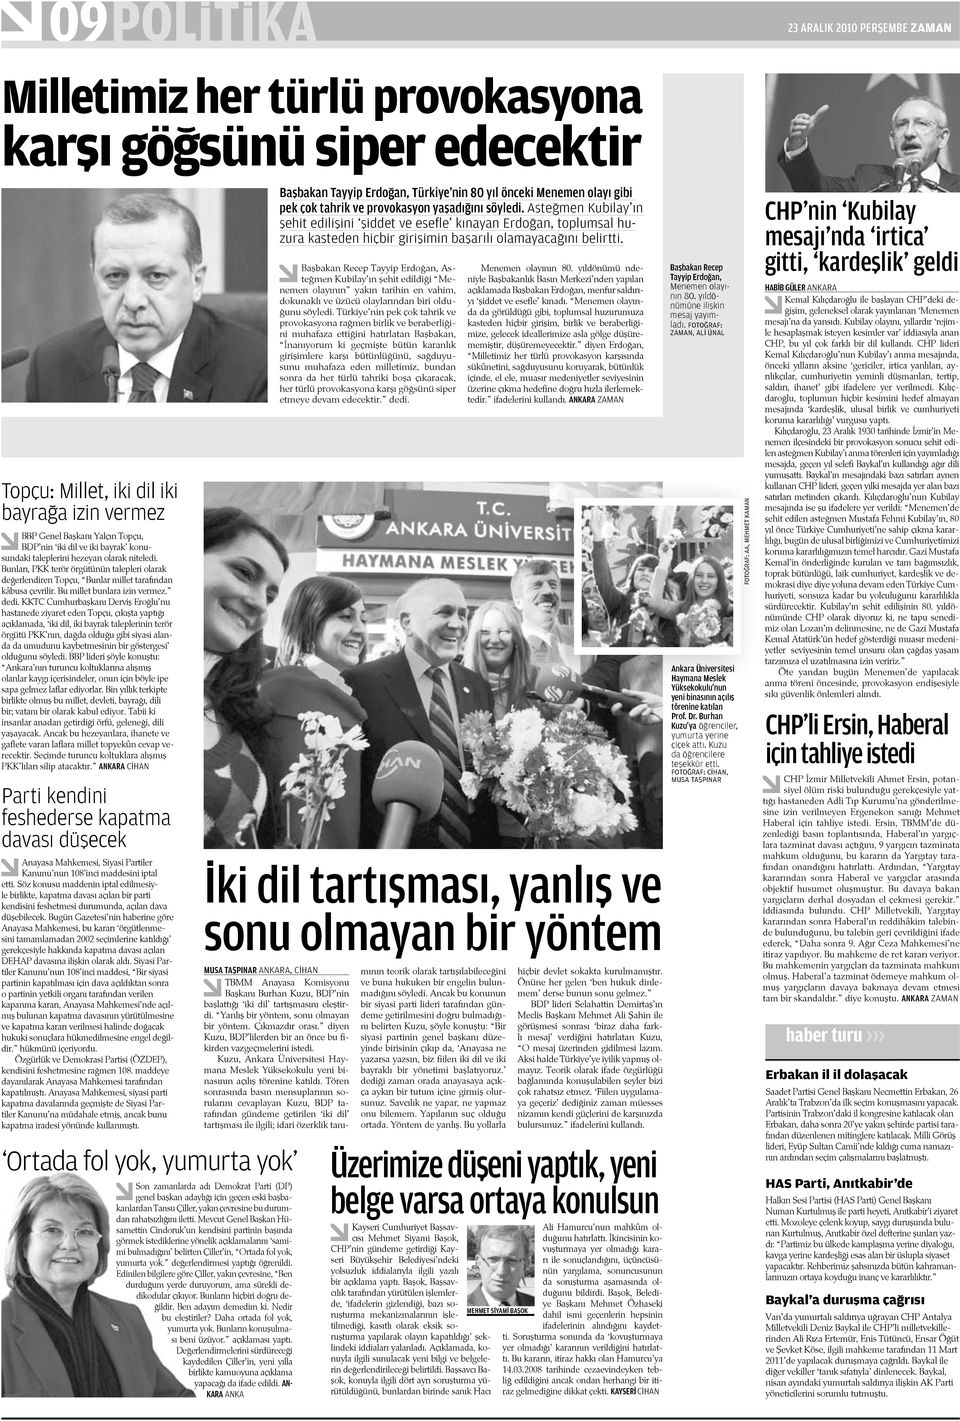 dedi. KKTC Cumhurbaşkanı Derviş Eroğlu nu hastanede ziyaret eden Topçu, çıkışta yaptığı açıklamada, iki dil, iki bayrak taleplerinin terör örgütü PKK nın, dağda olduğu gibi siyasi alanda da umudunu